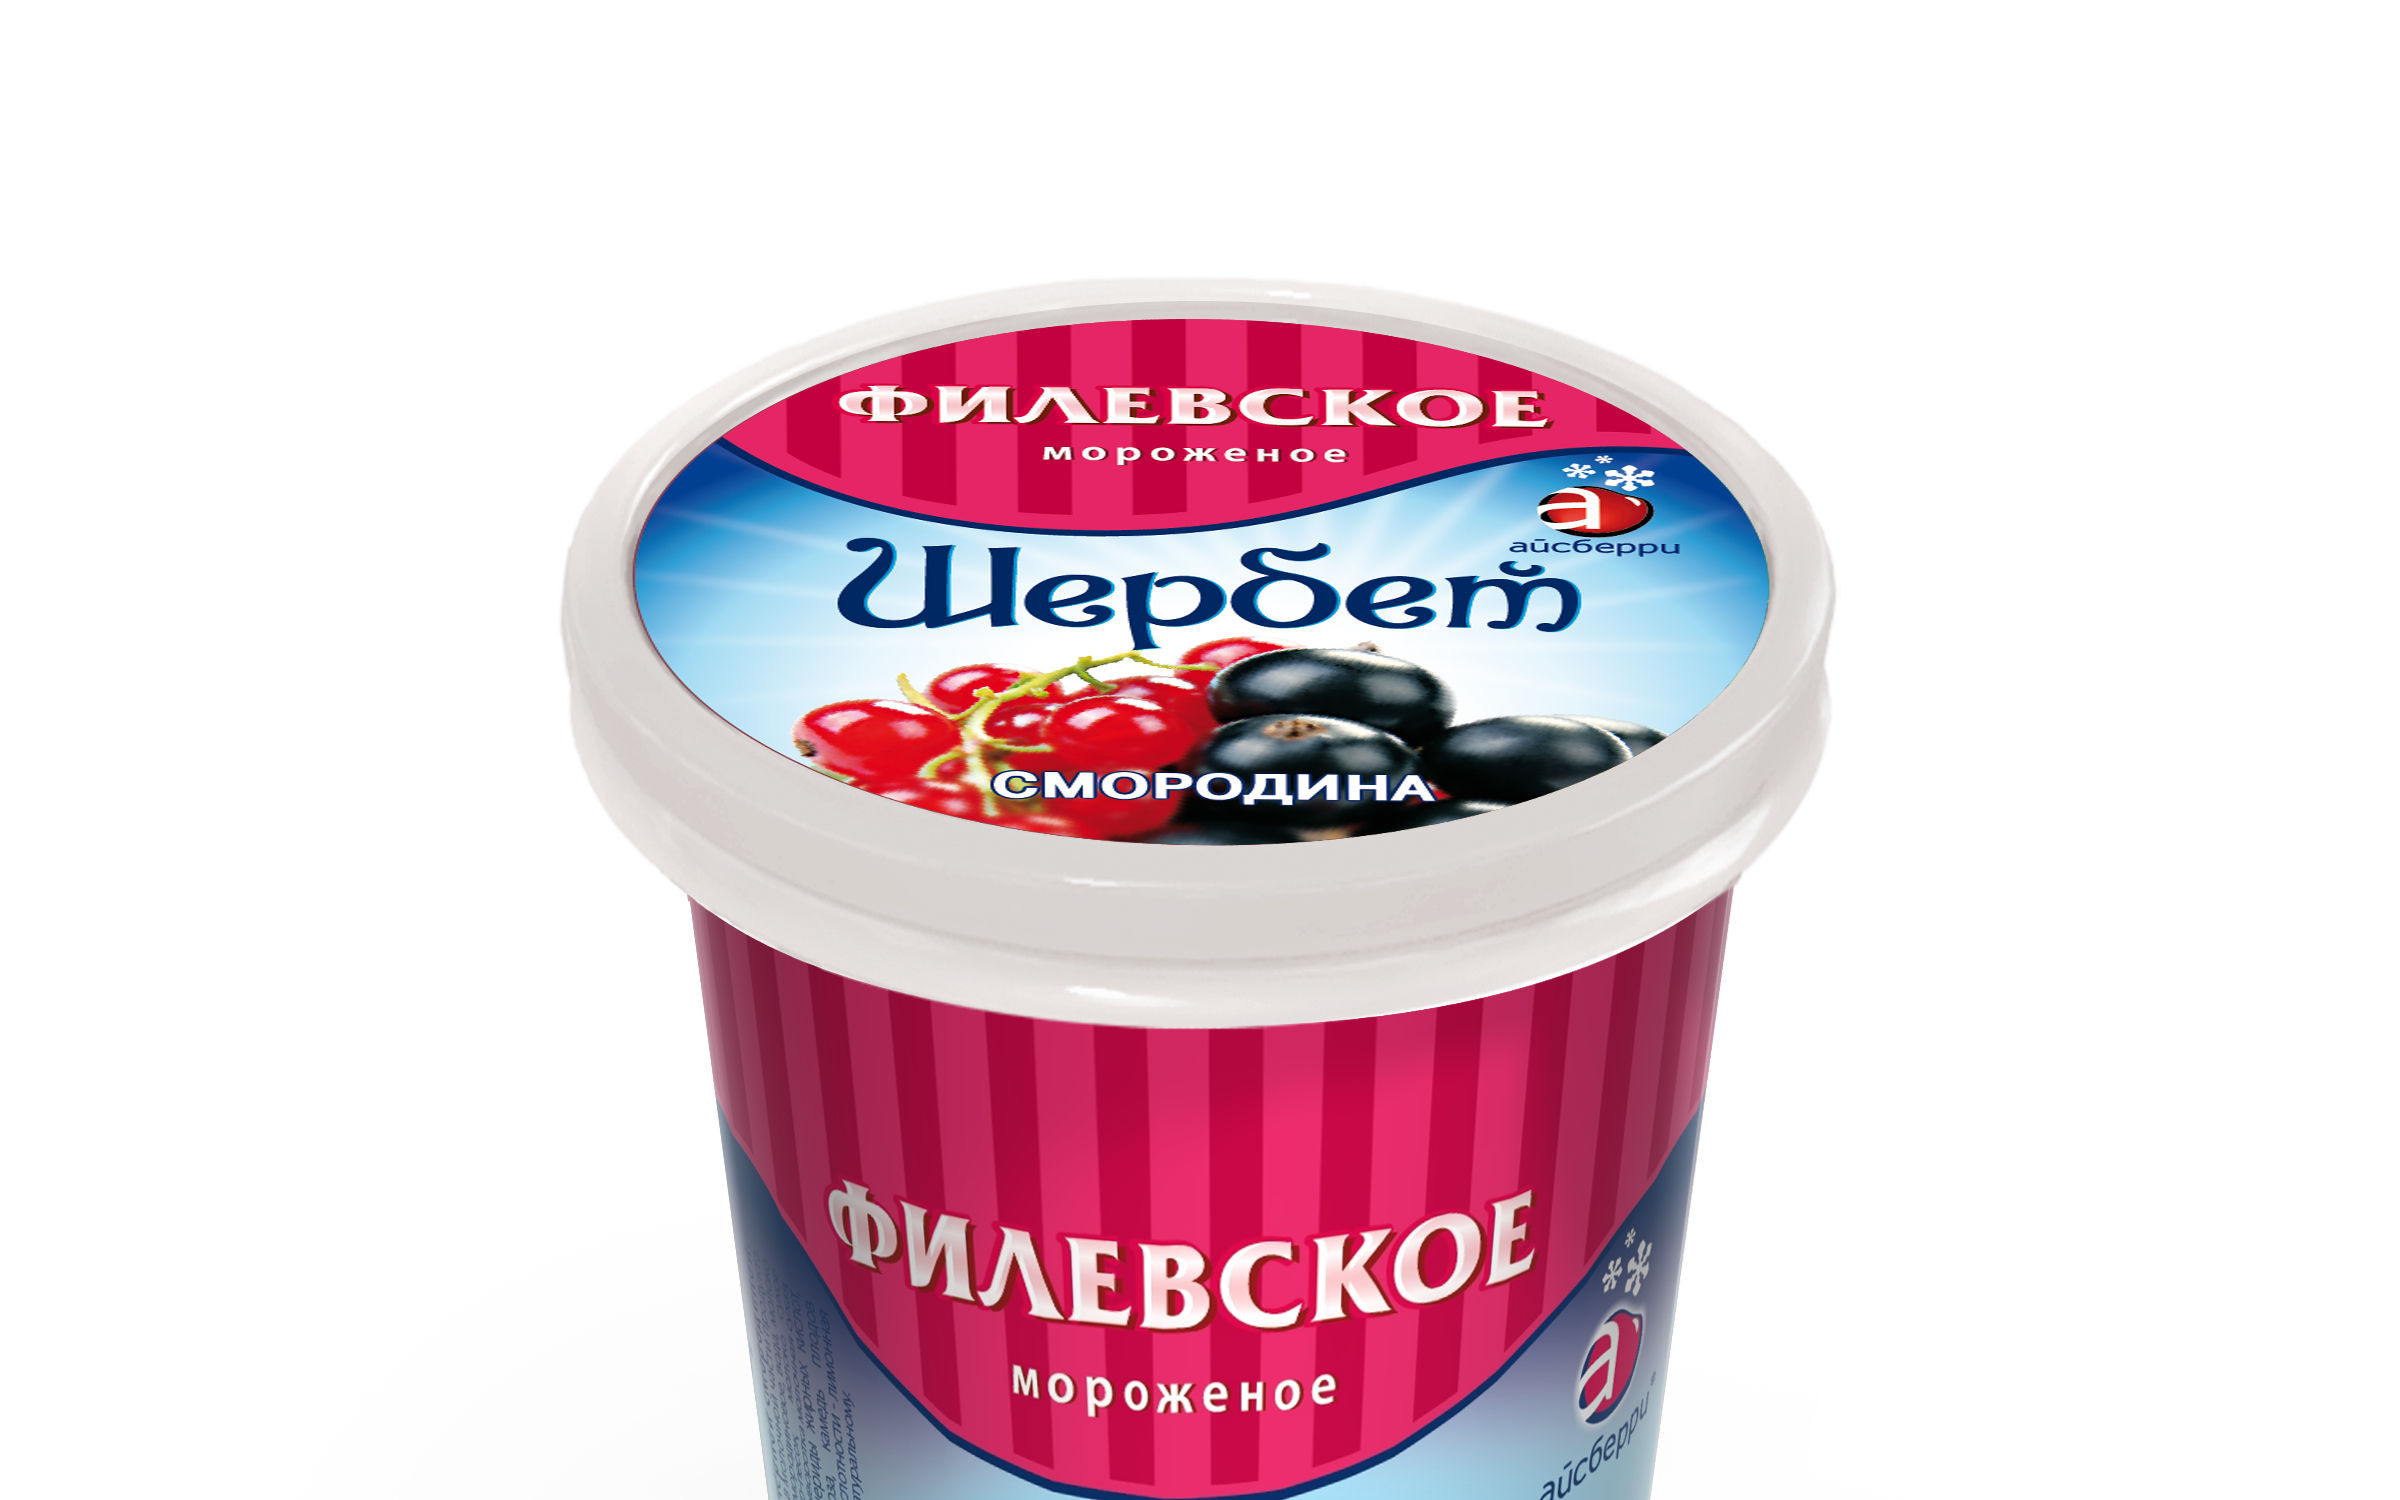 Мороженое купить 20 рублей. Щербет мороженое. Филевское мороженое. Мороженое Айсберри. Щербет мороженое Филевское состав.